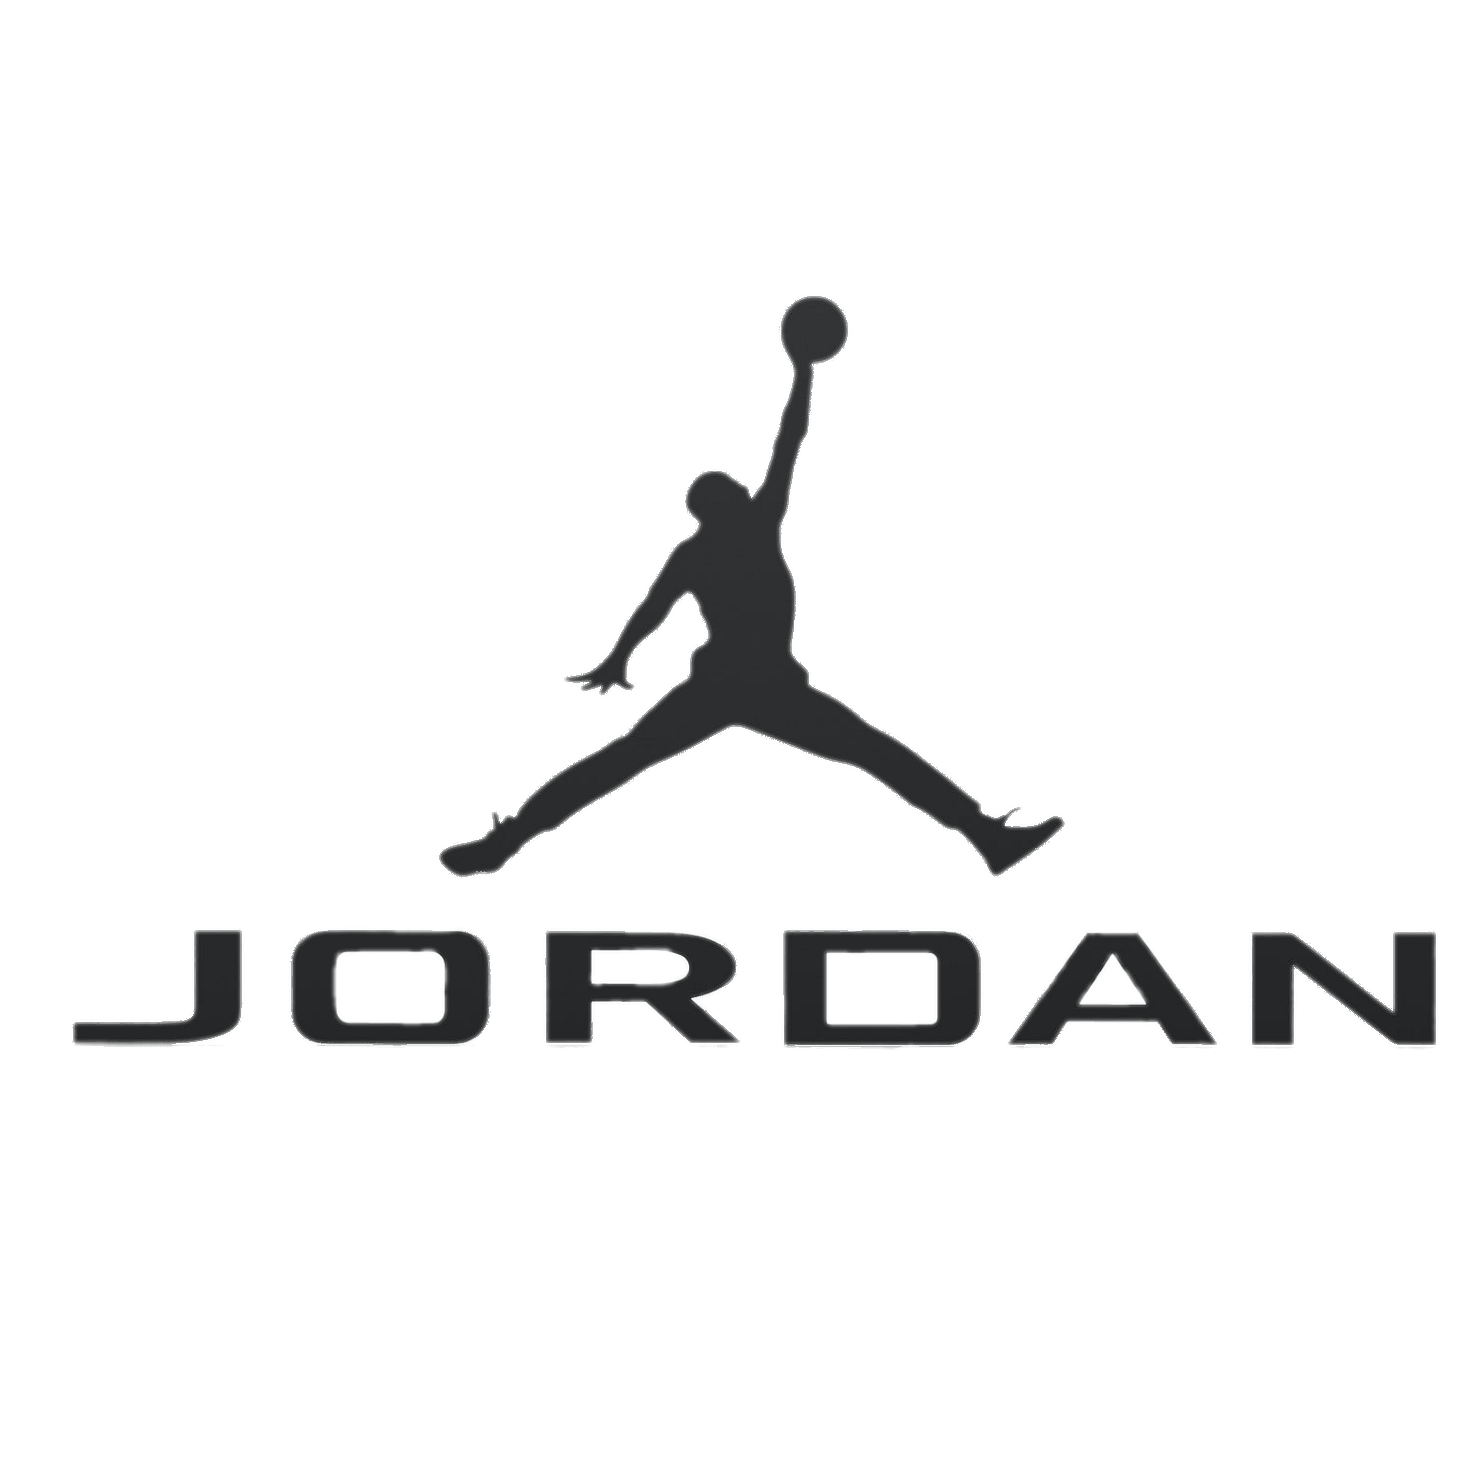 Jordan Logo - Air Jordan logo transparent PNG - StickPNG